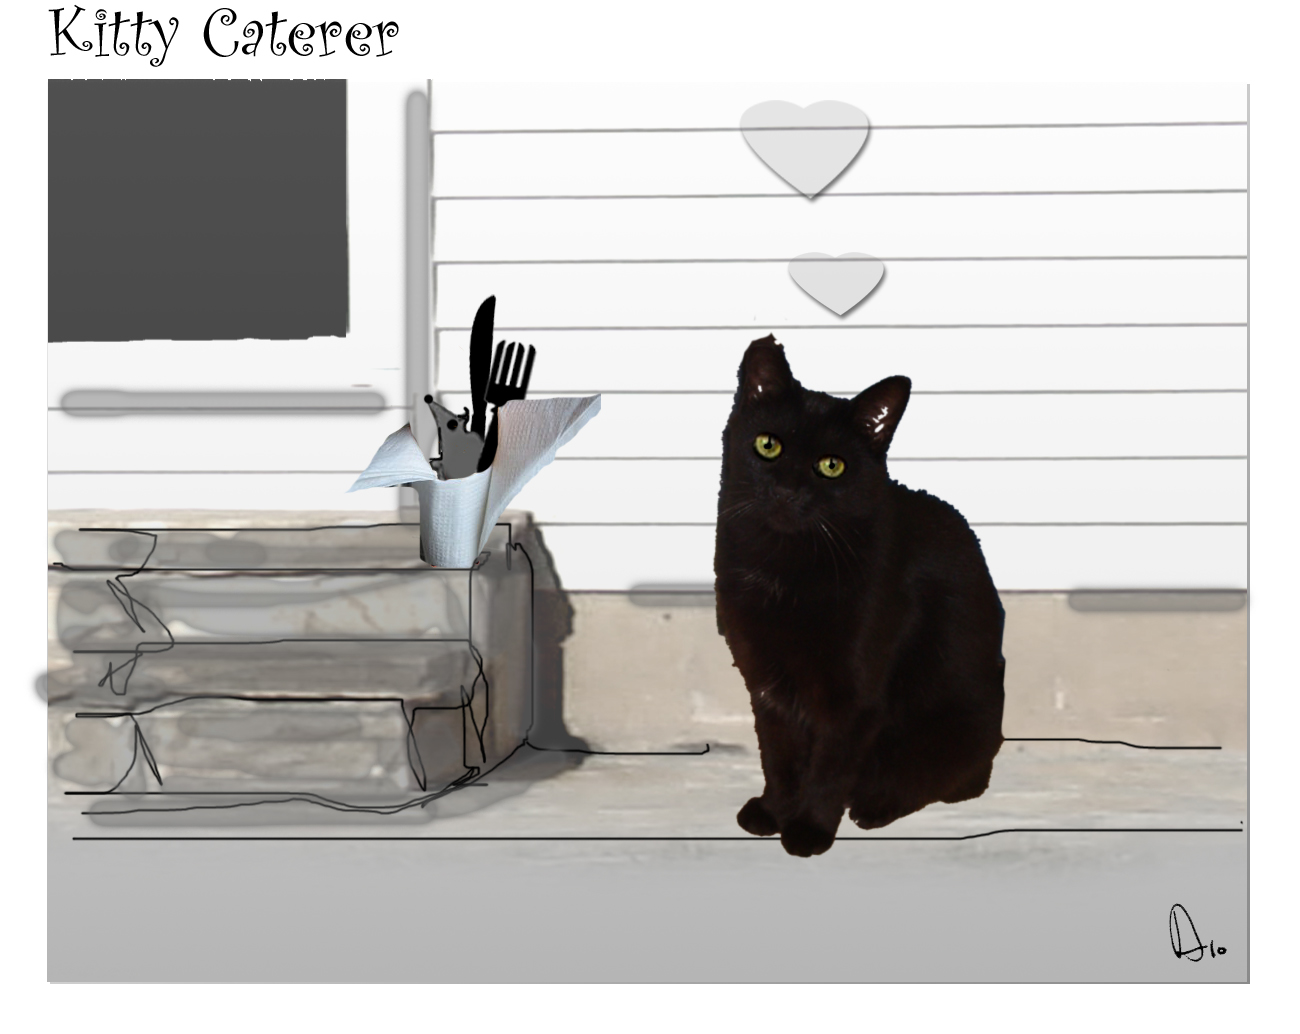 Kitty Caterer